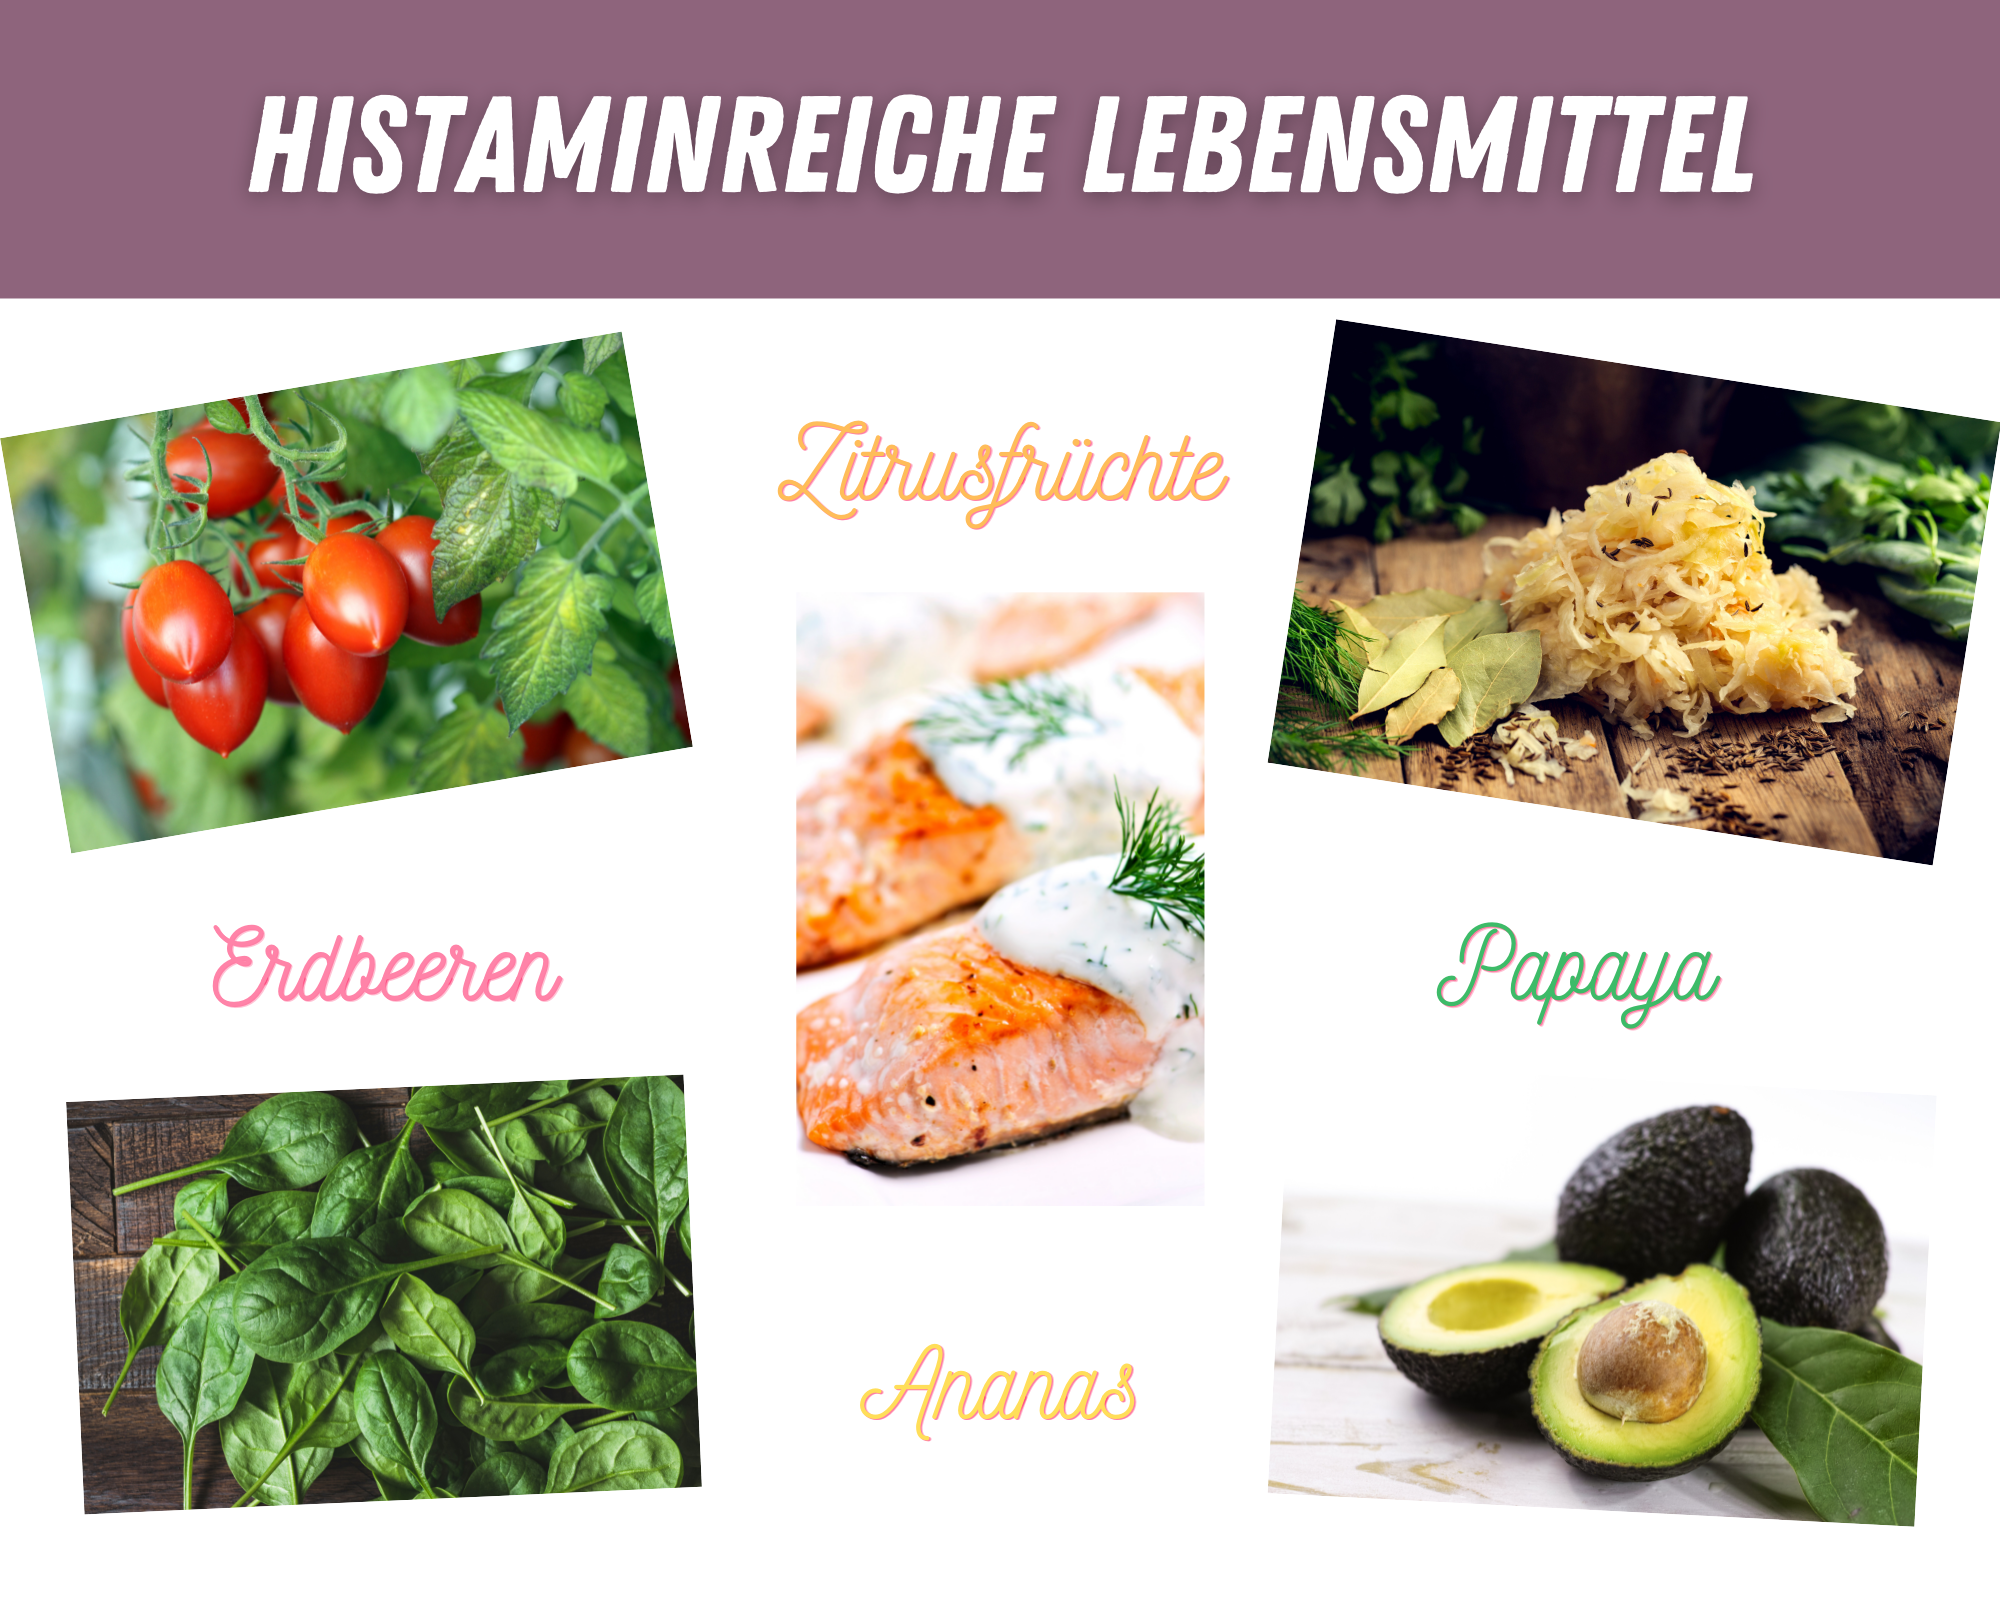 Histaminreiche Lebensmittel